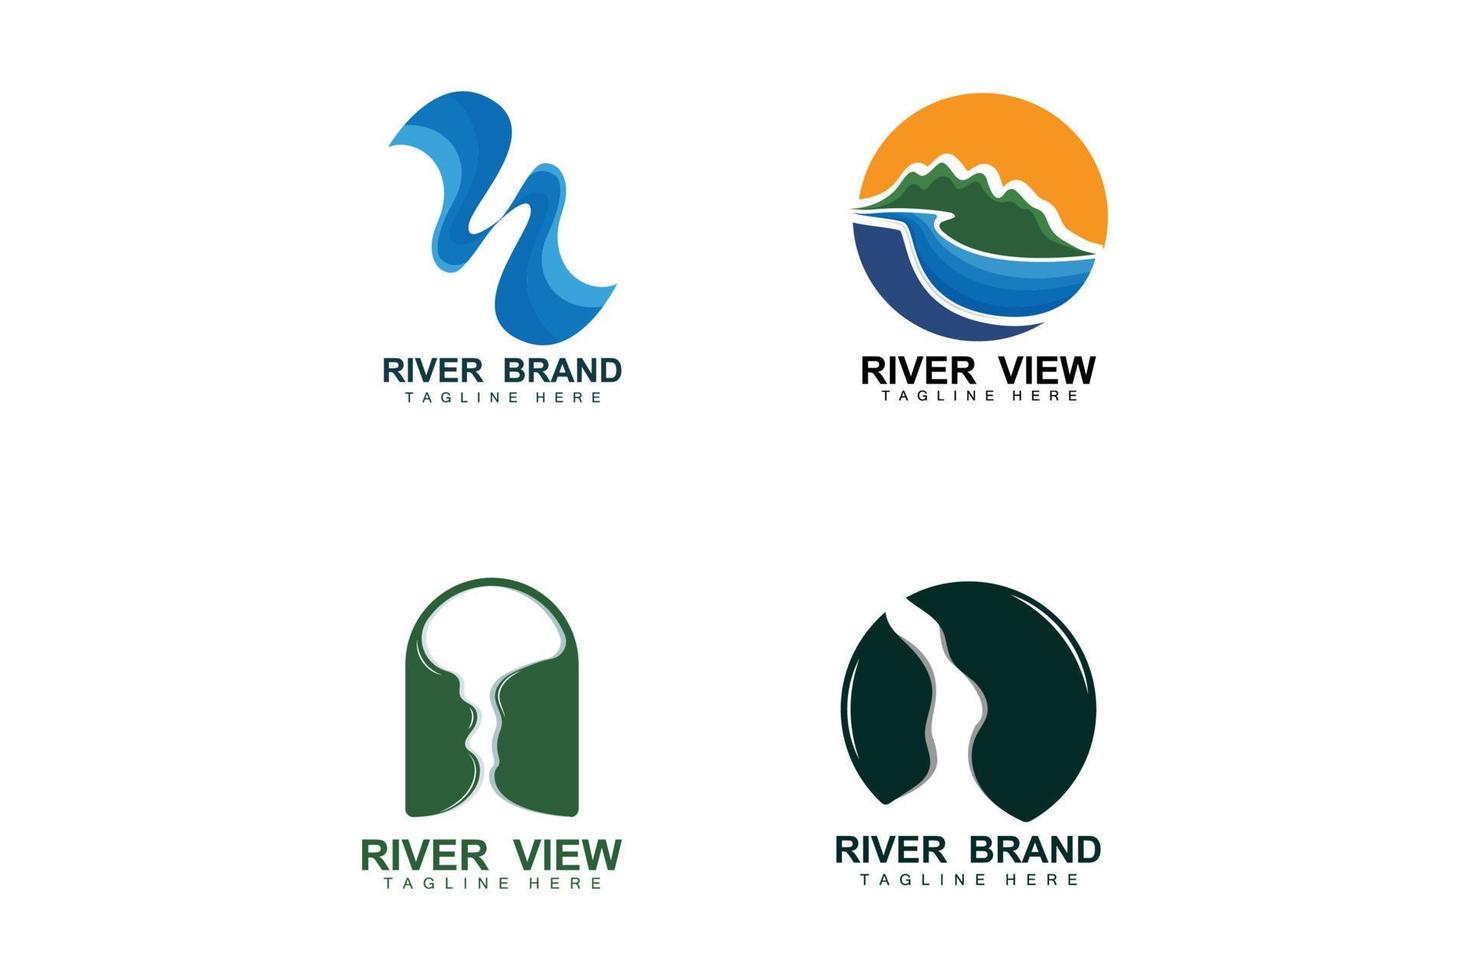 design de logotipo do rio, vetor de riacho do rio, ilustração ribeirinha com uma combinação de montanhas e natureza, marca do produto